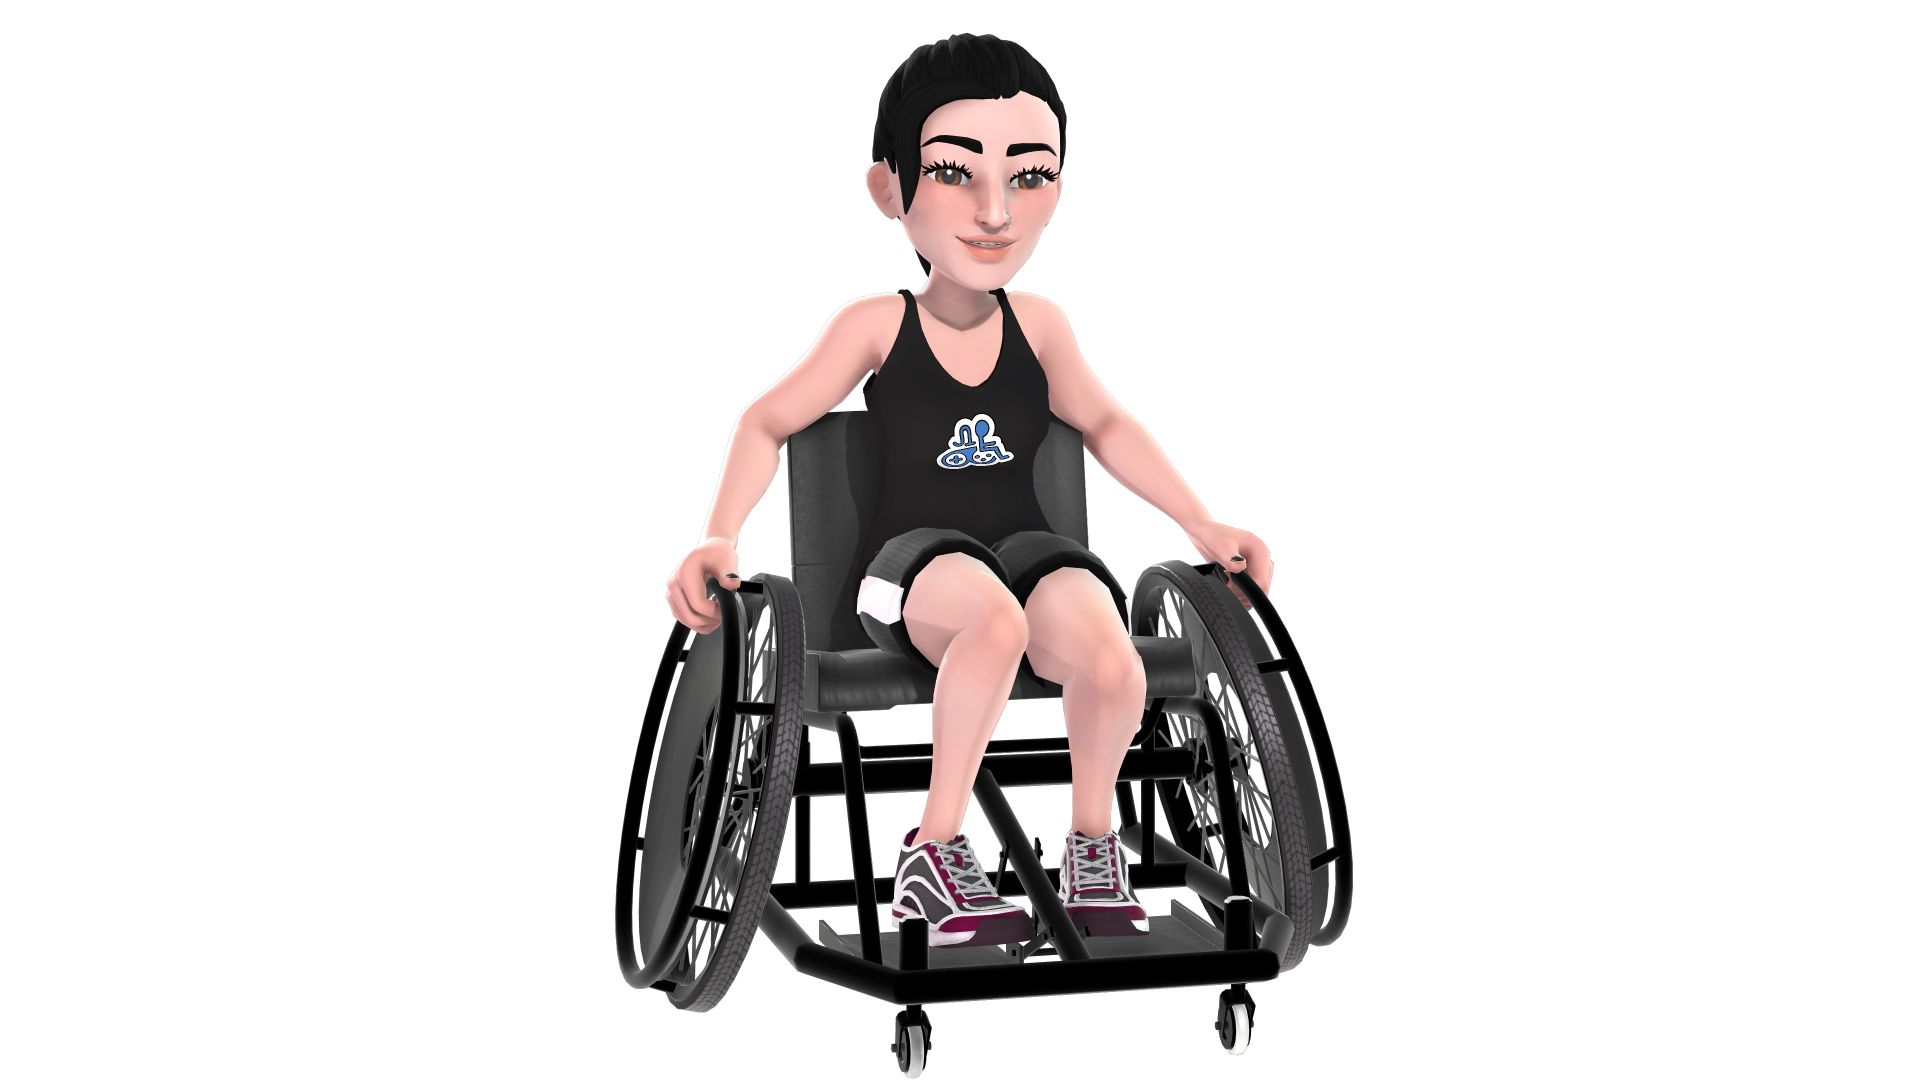 Eine hellhäutige Frau als Xbox-Avatar, die im Rollstuhl sitzt und ein schwarzes Tank-Top mit dem Logo der Disability Pride-Kugel und schwarze Shorts trägt.